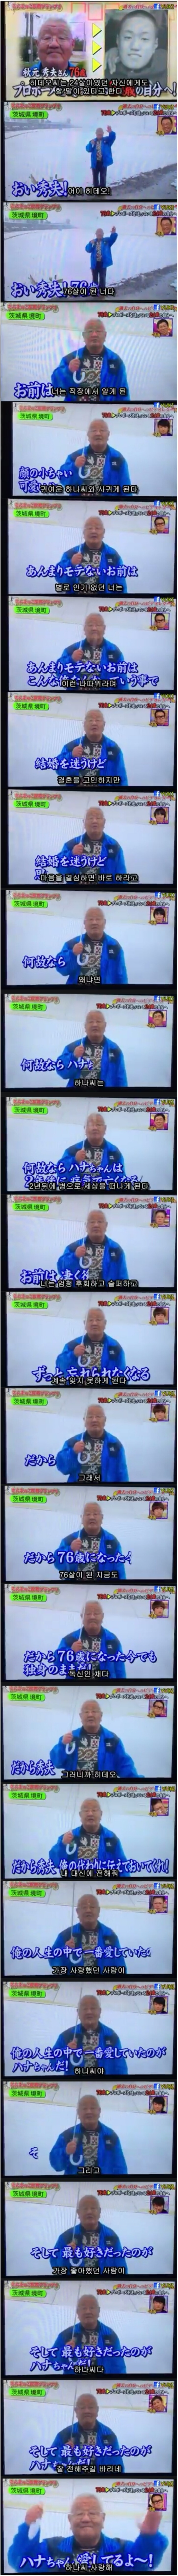 일본방송에서 큰 이슈가 된 과거의 나에게.jpg